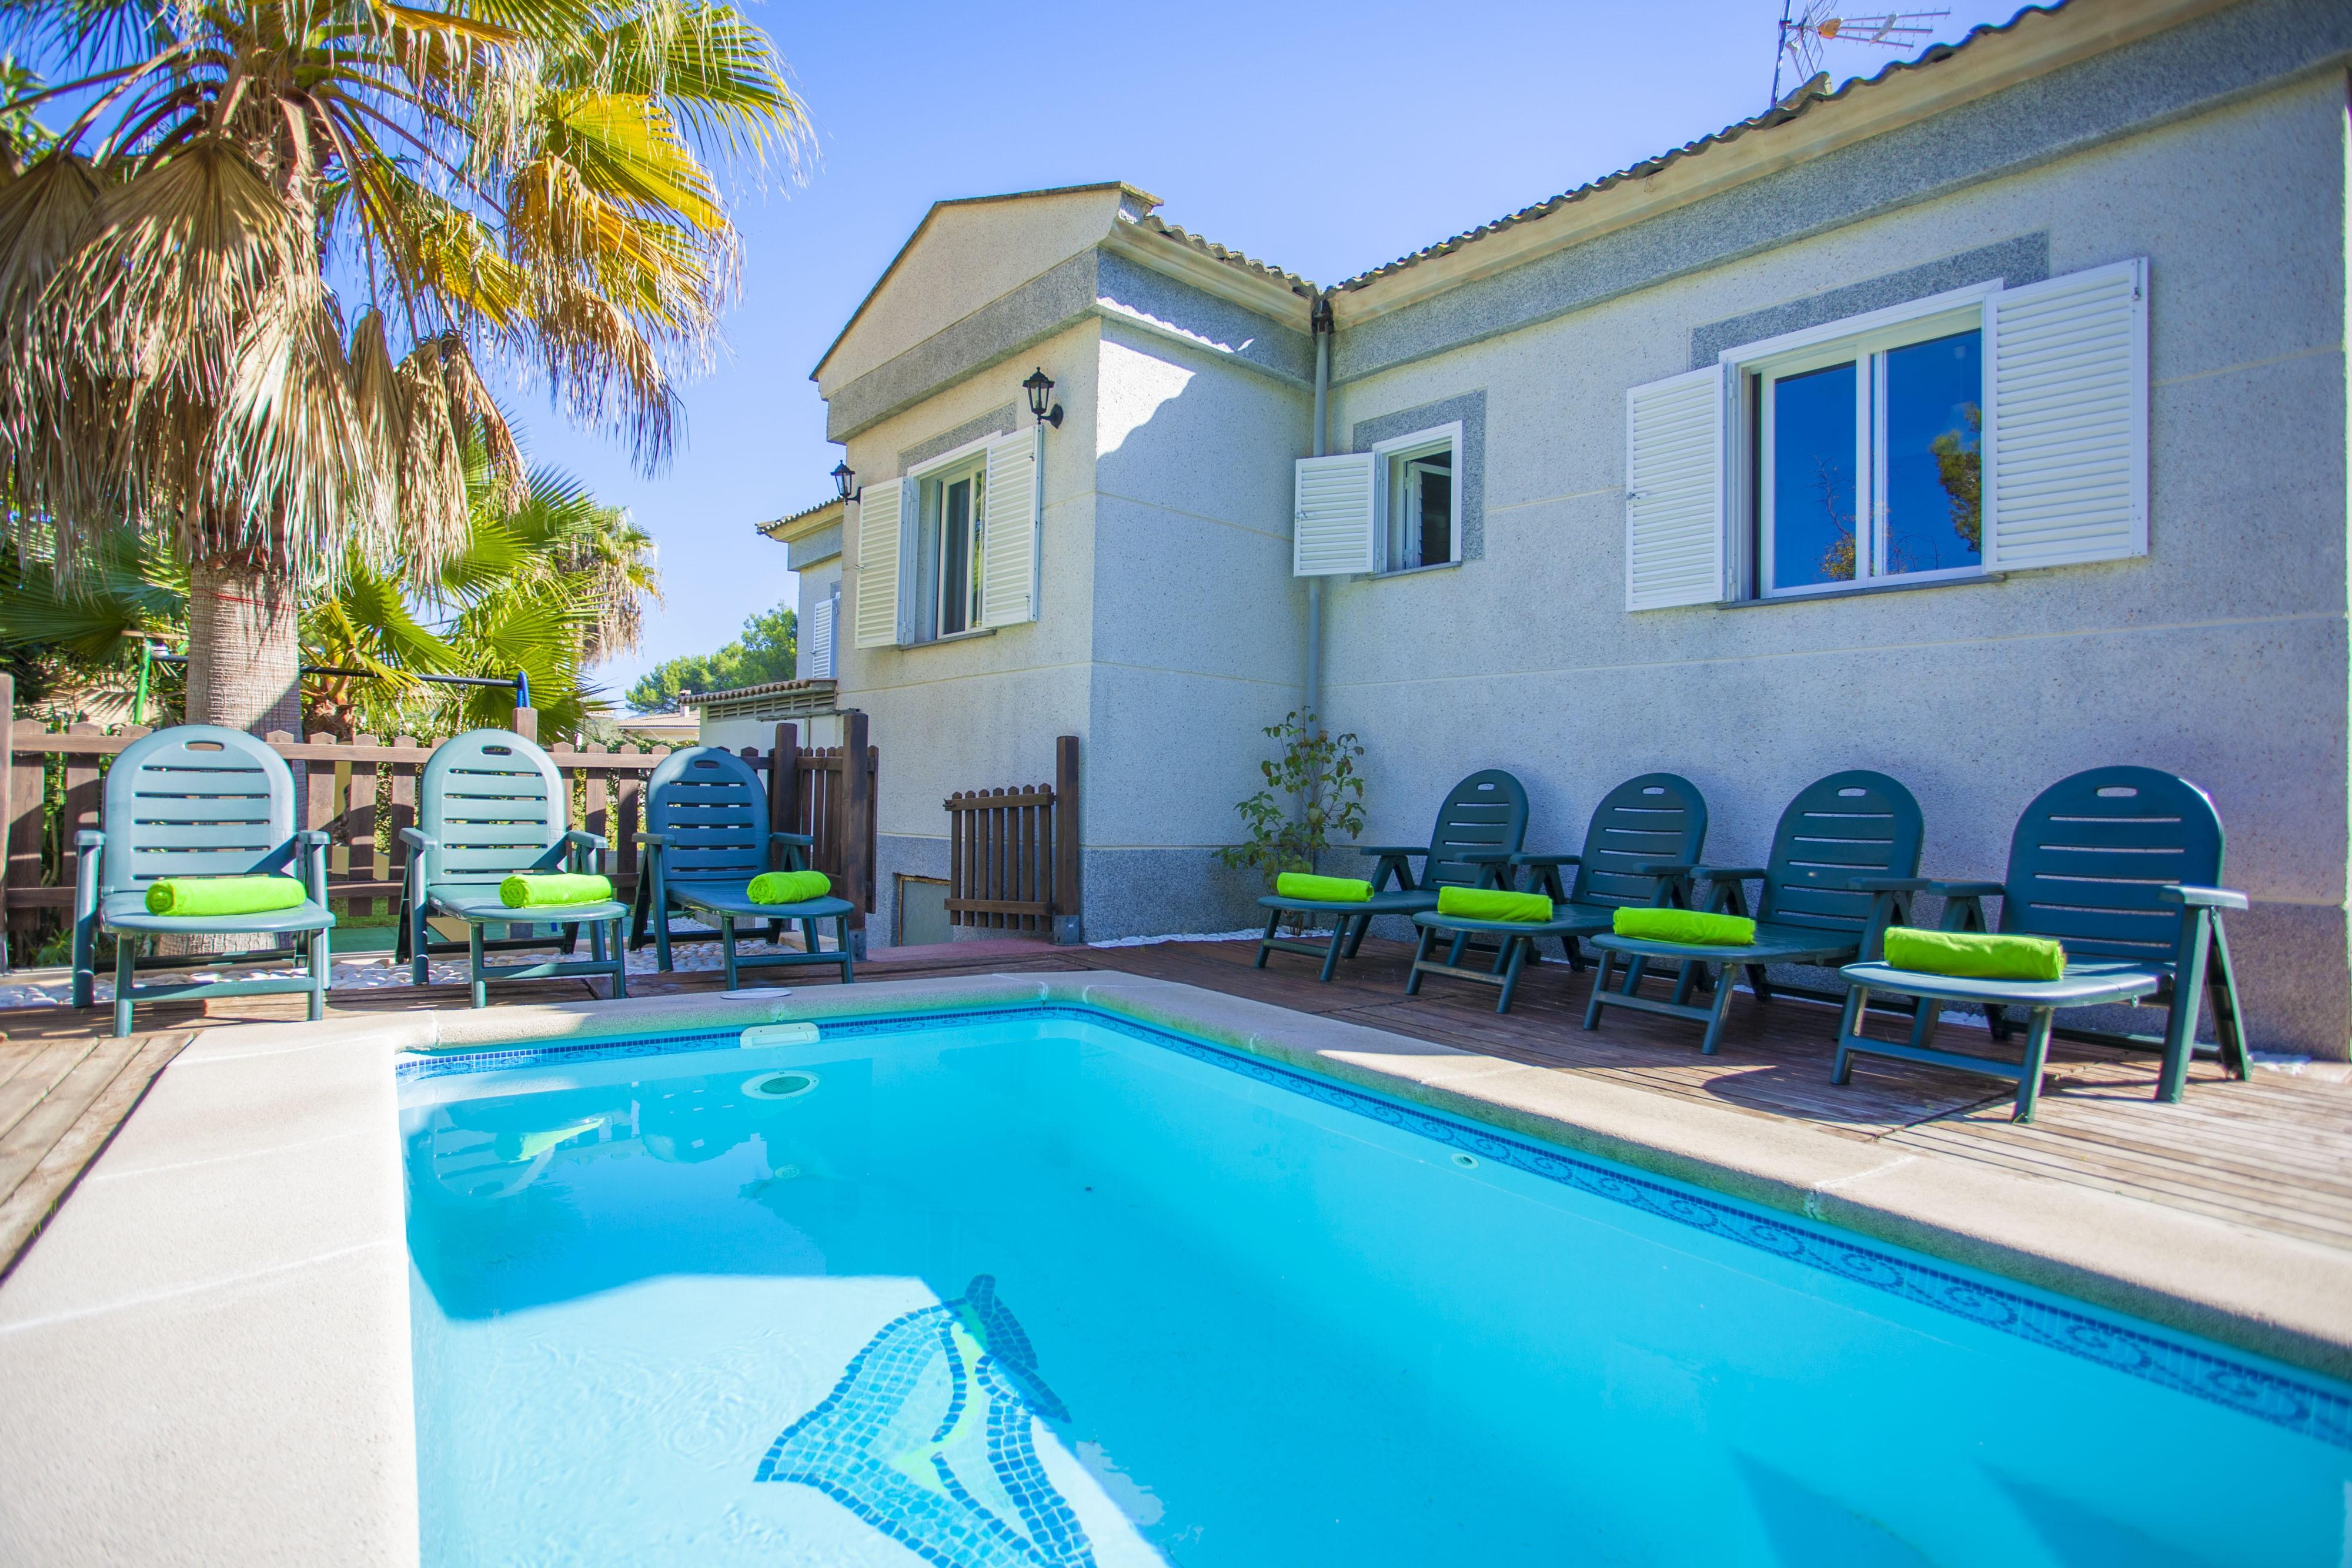 Property Image 2 - VILLA SA MARINA (FIGUEMAR) - Villa with private pool in Alcudia. Free WiFi